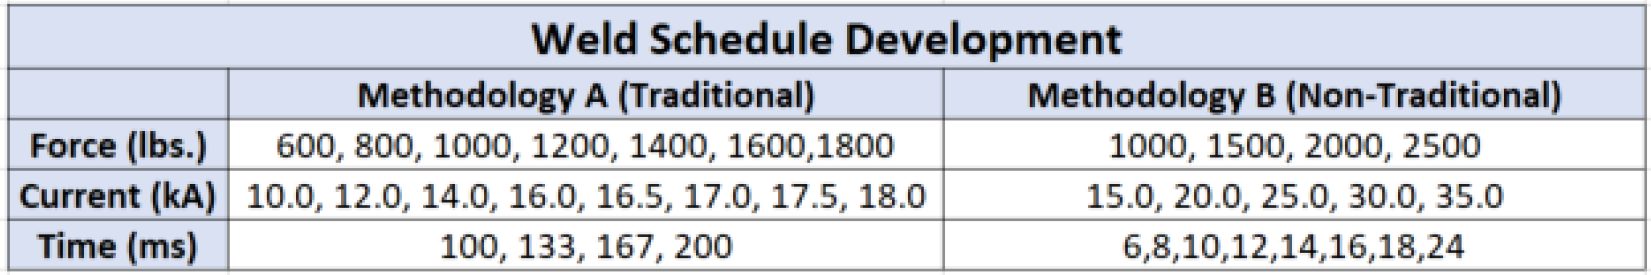 Table 3: Weld Schedule Development